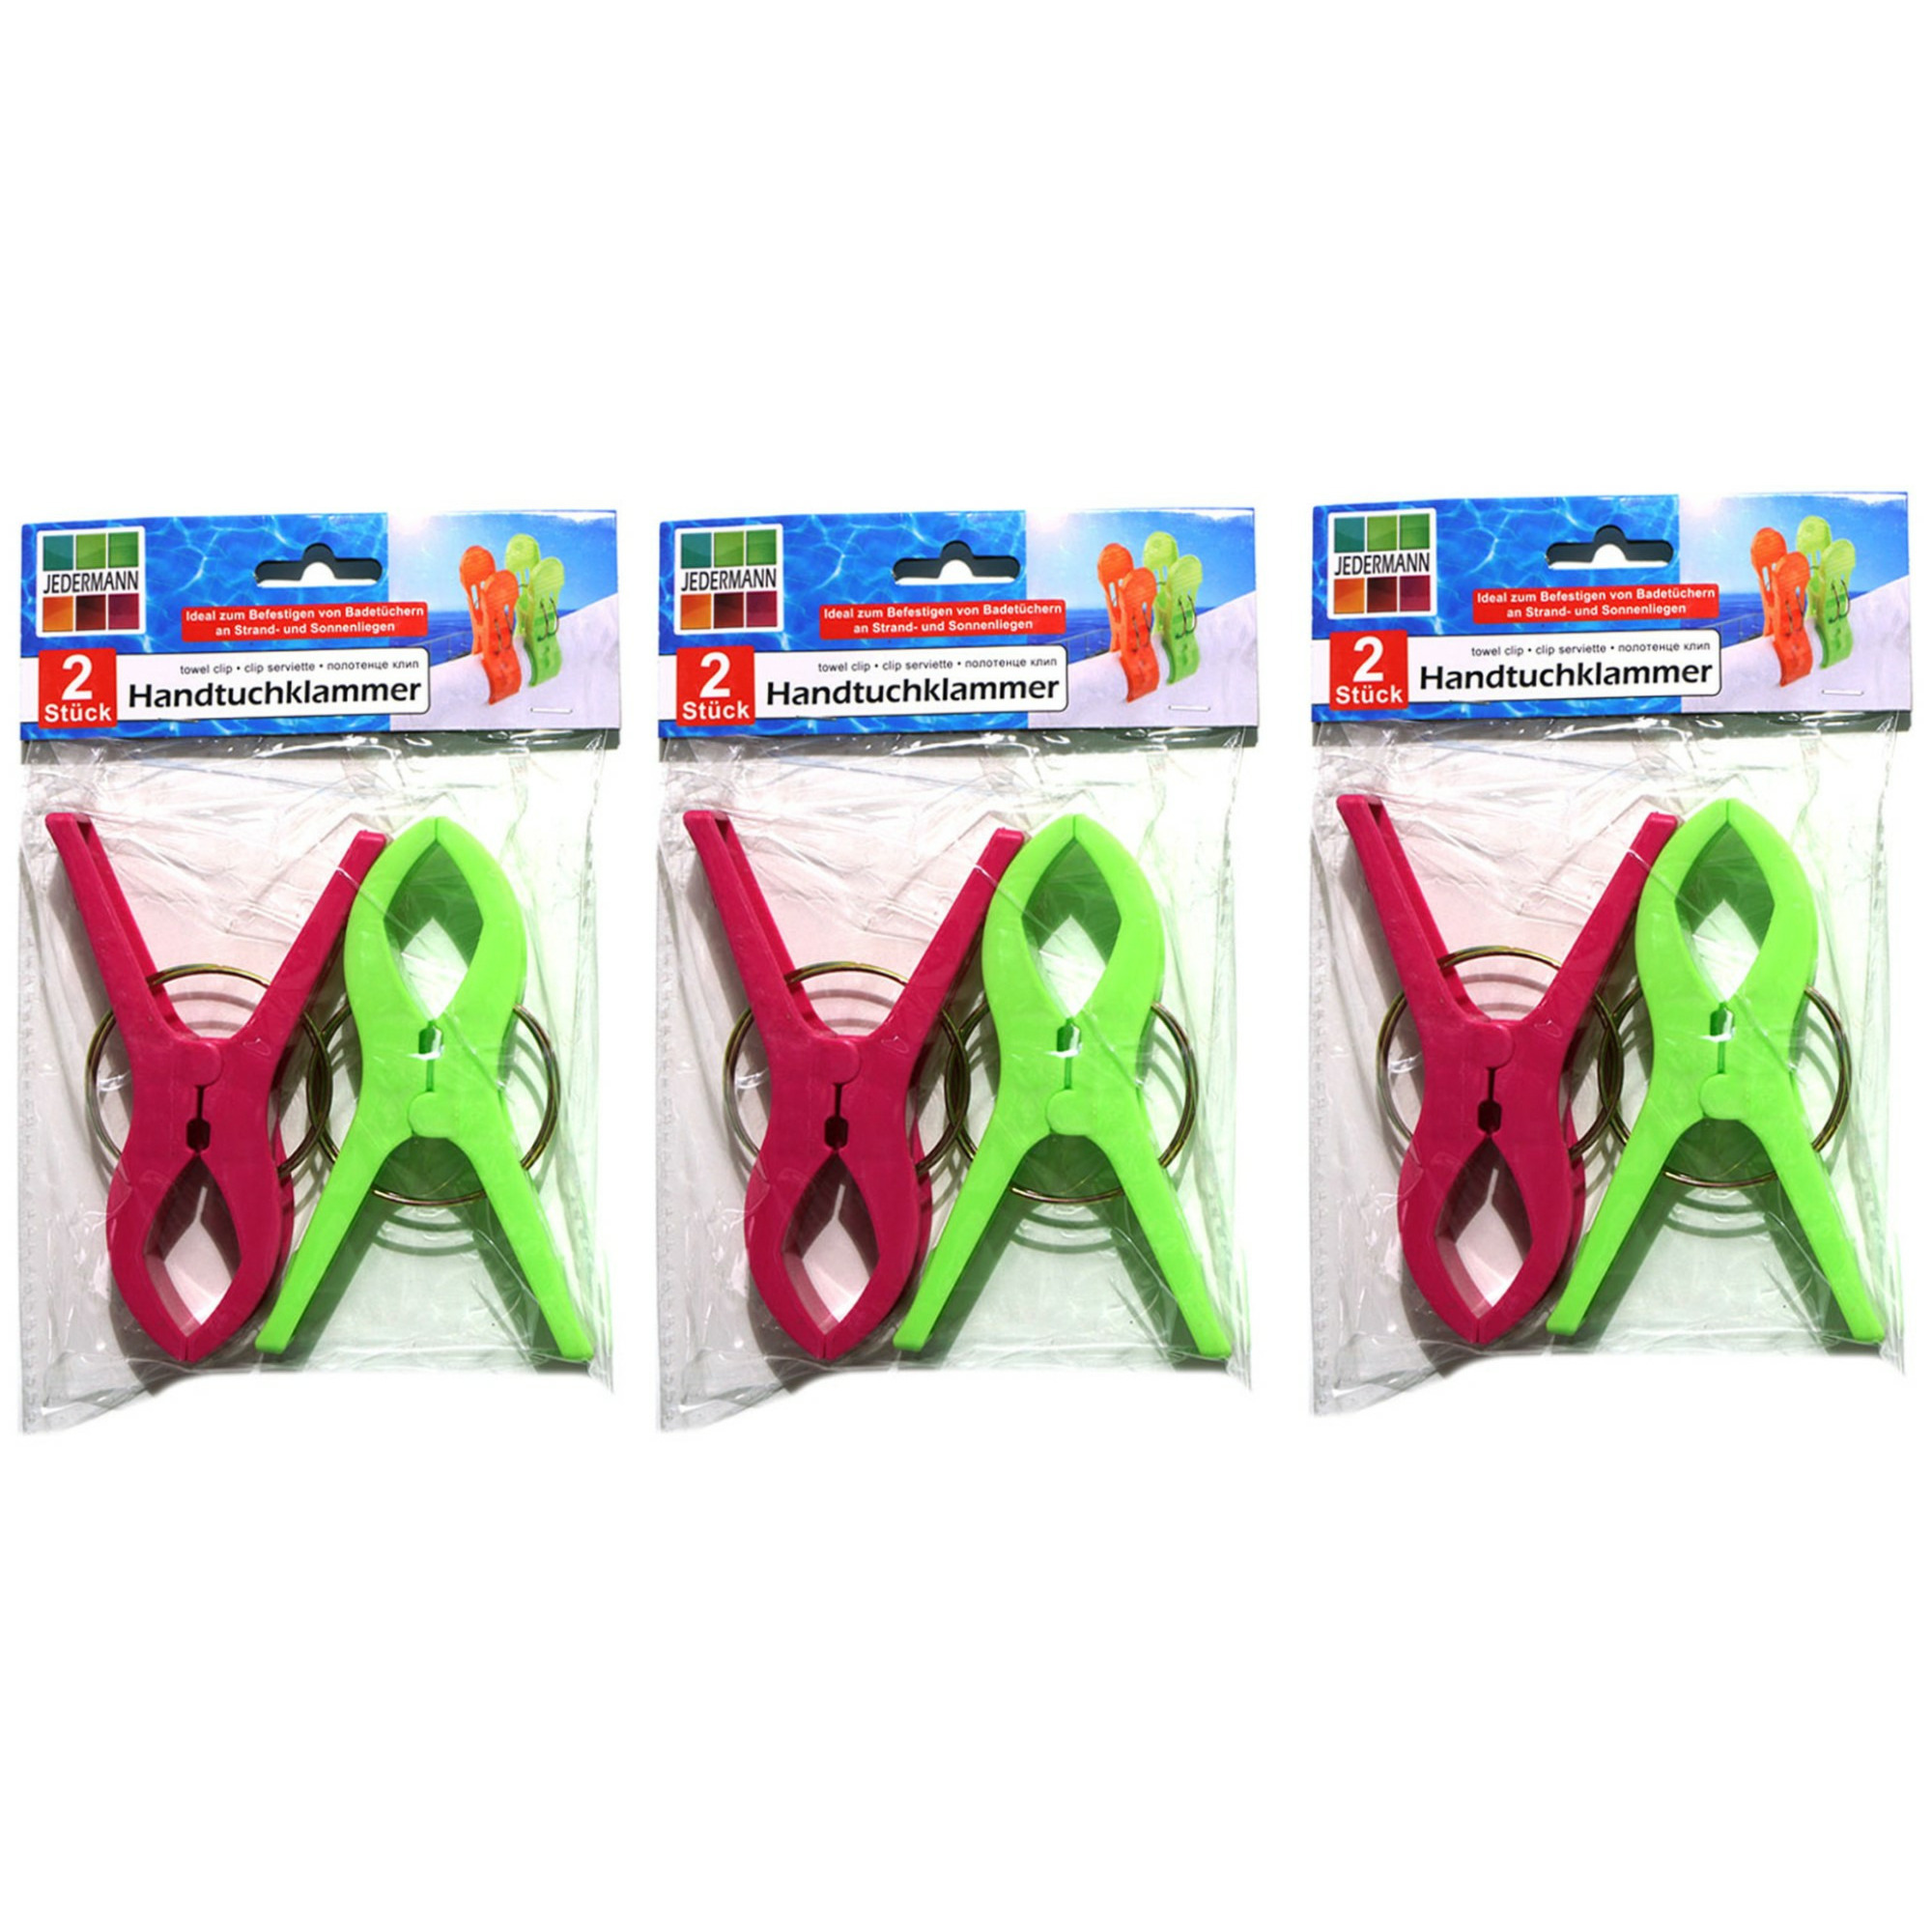 Handdoekknijpers XL 6x groen-roze kunststof 12 cm wasknijpers